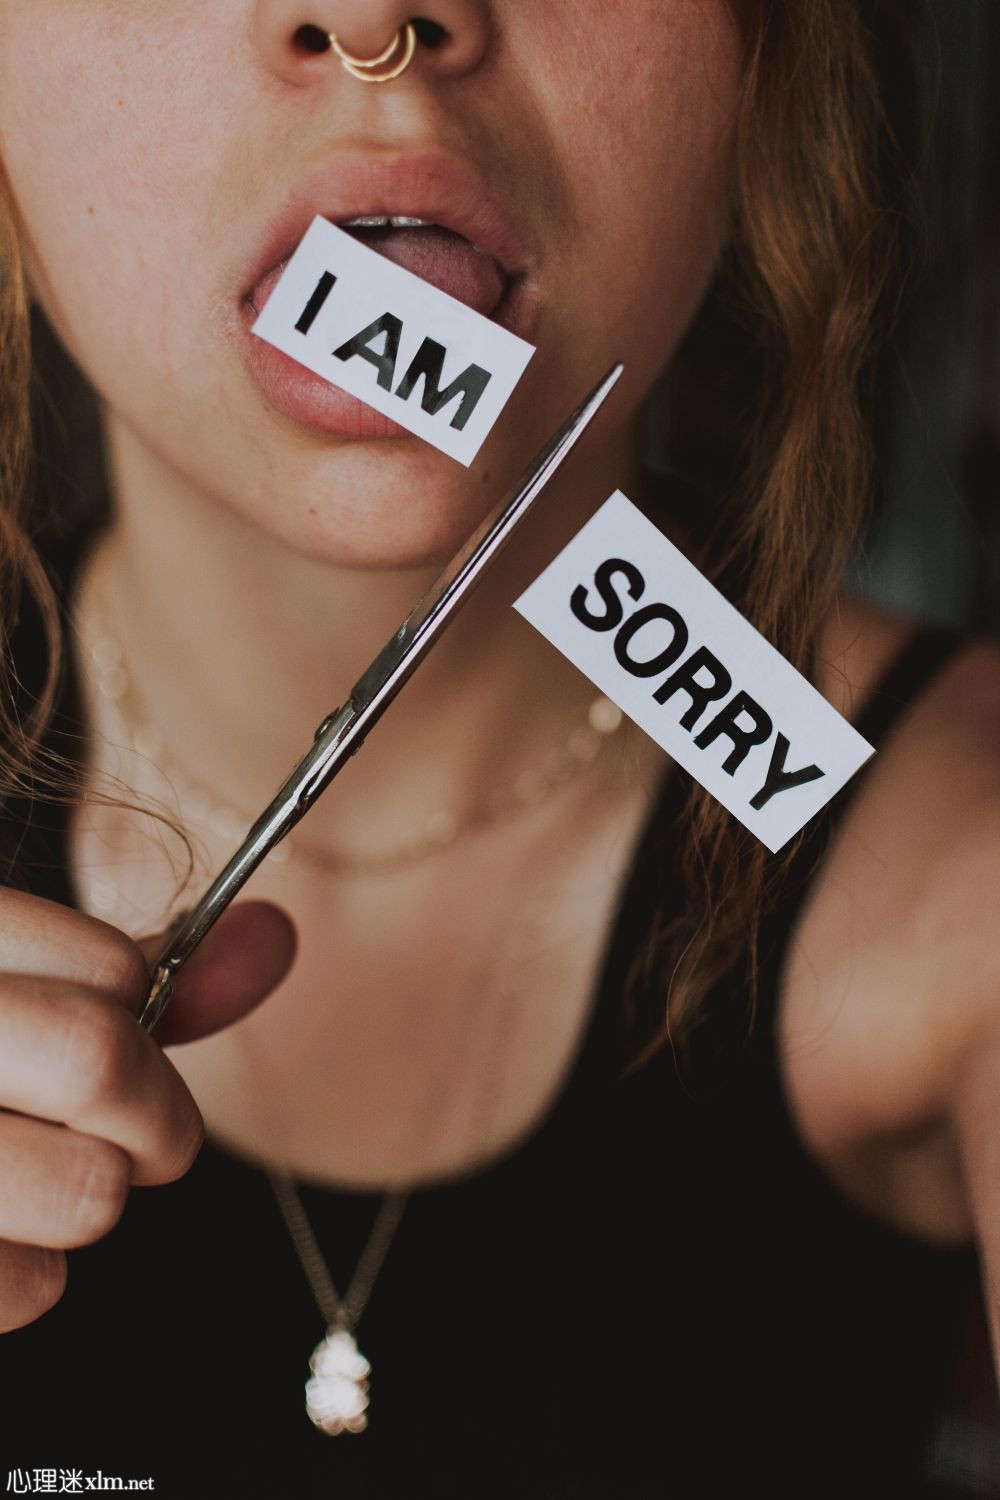 当一个人只是假装抱歉时，有5个迹象表明他在操纵别人道歉